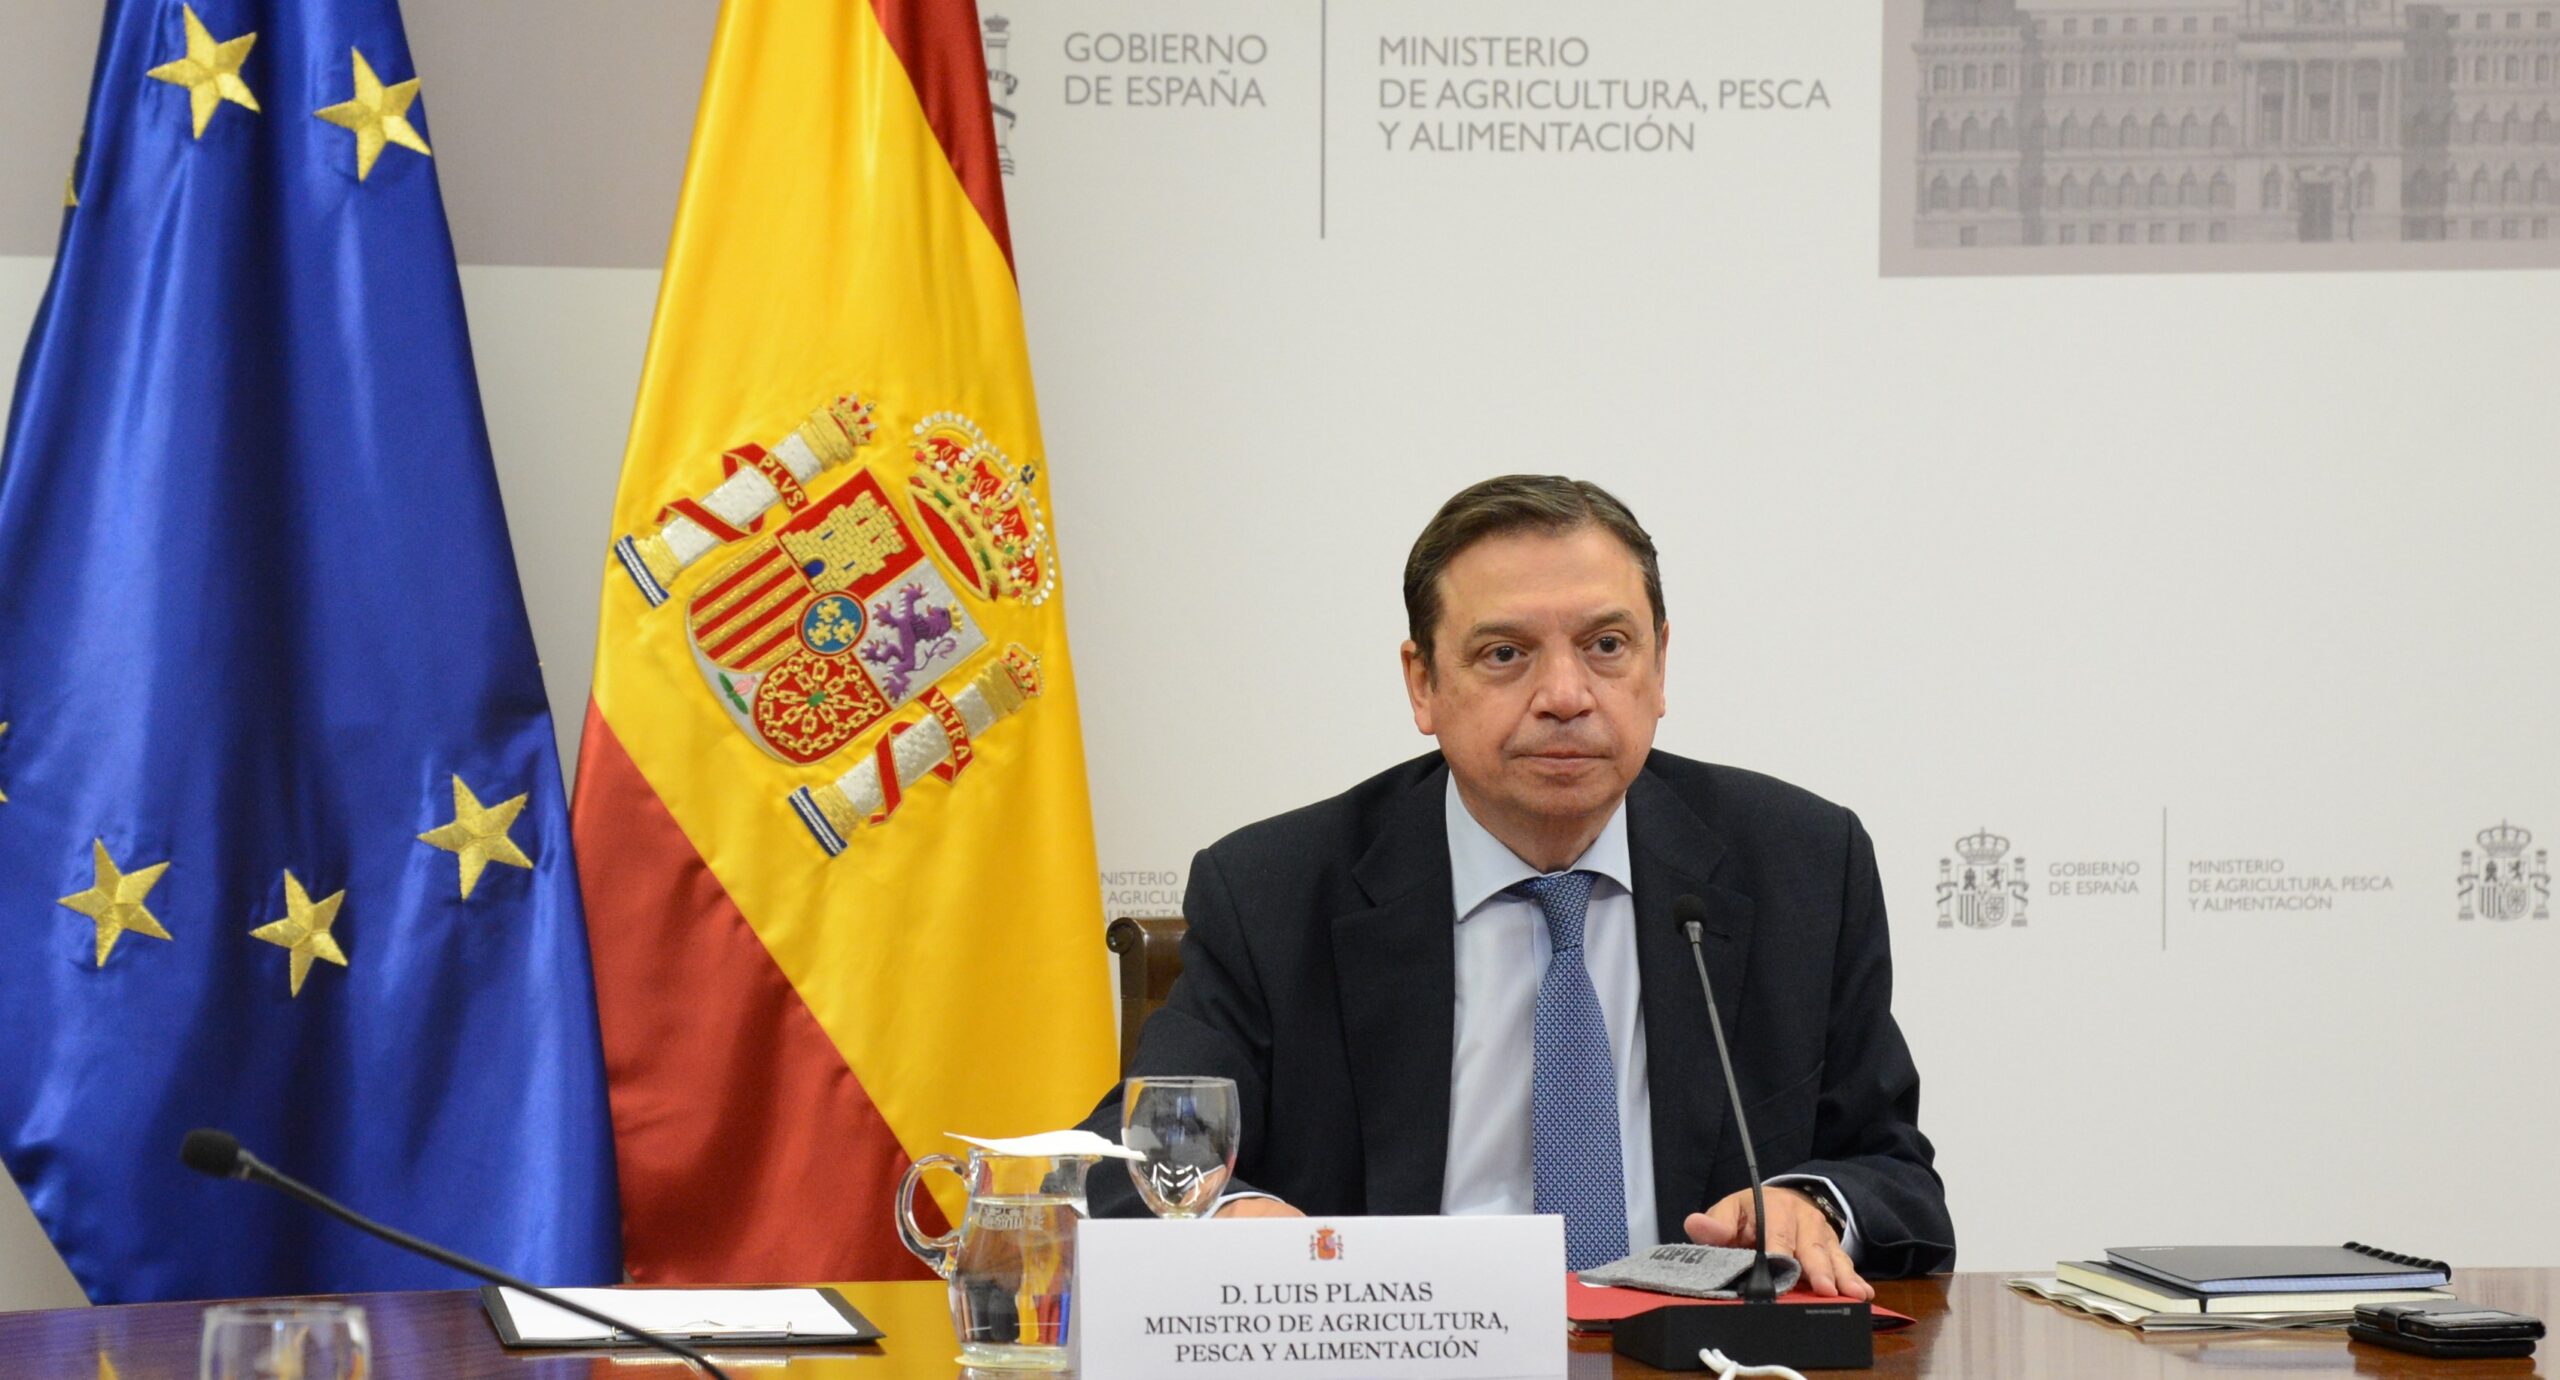 Luis planas, ministro de Agricultura, pesca y alimentación destacó que España se unió a la Misión de Innovación Agrícola para el Clima promovida por EE.UU.